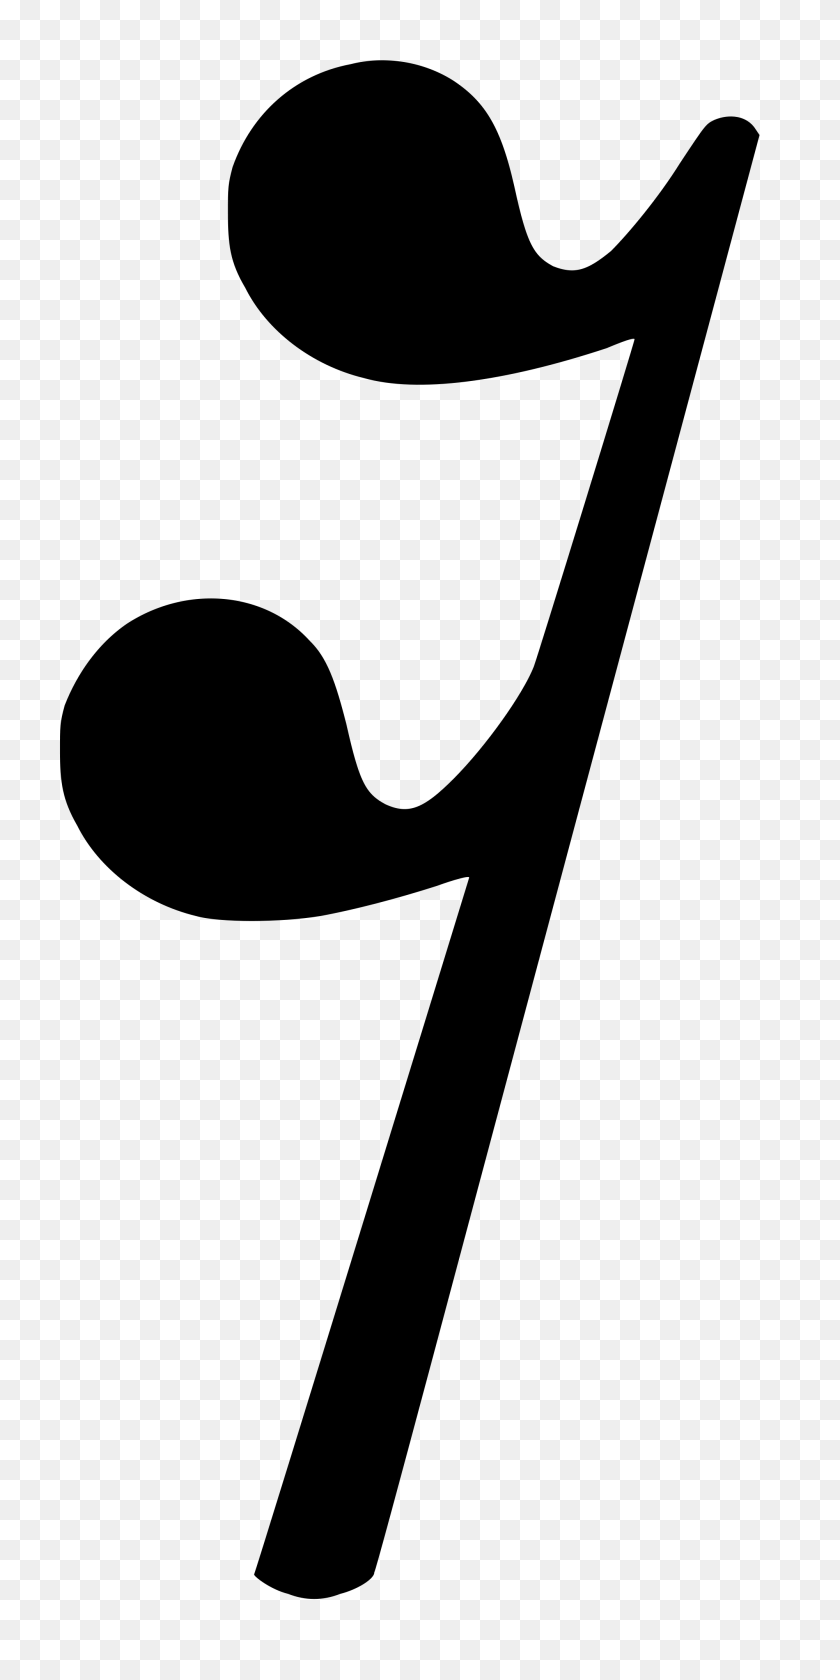 2000x4154 Символ Остальной Музыки Бесплатные Прозрачные Изображения С Клипартами - Музыкальный Символ Png